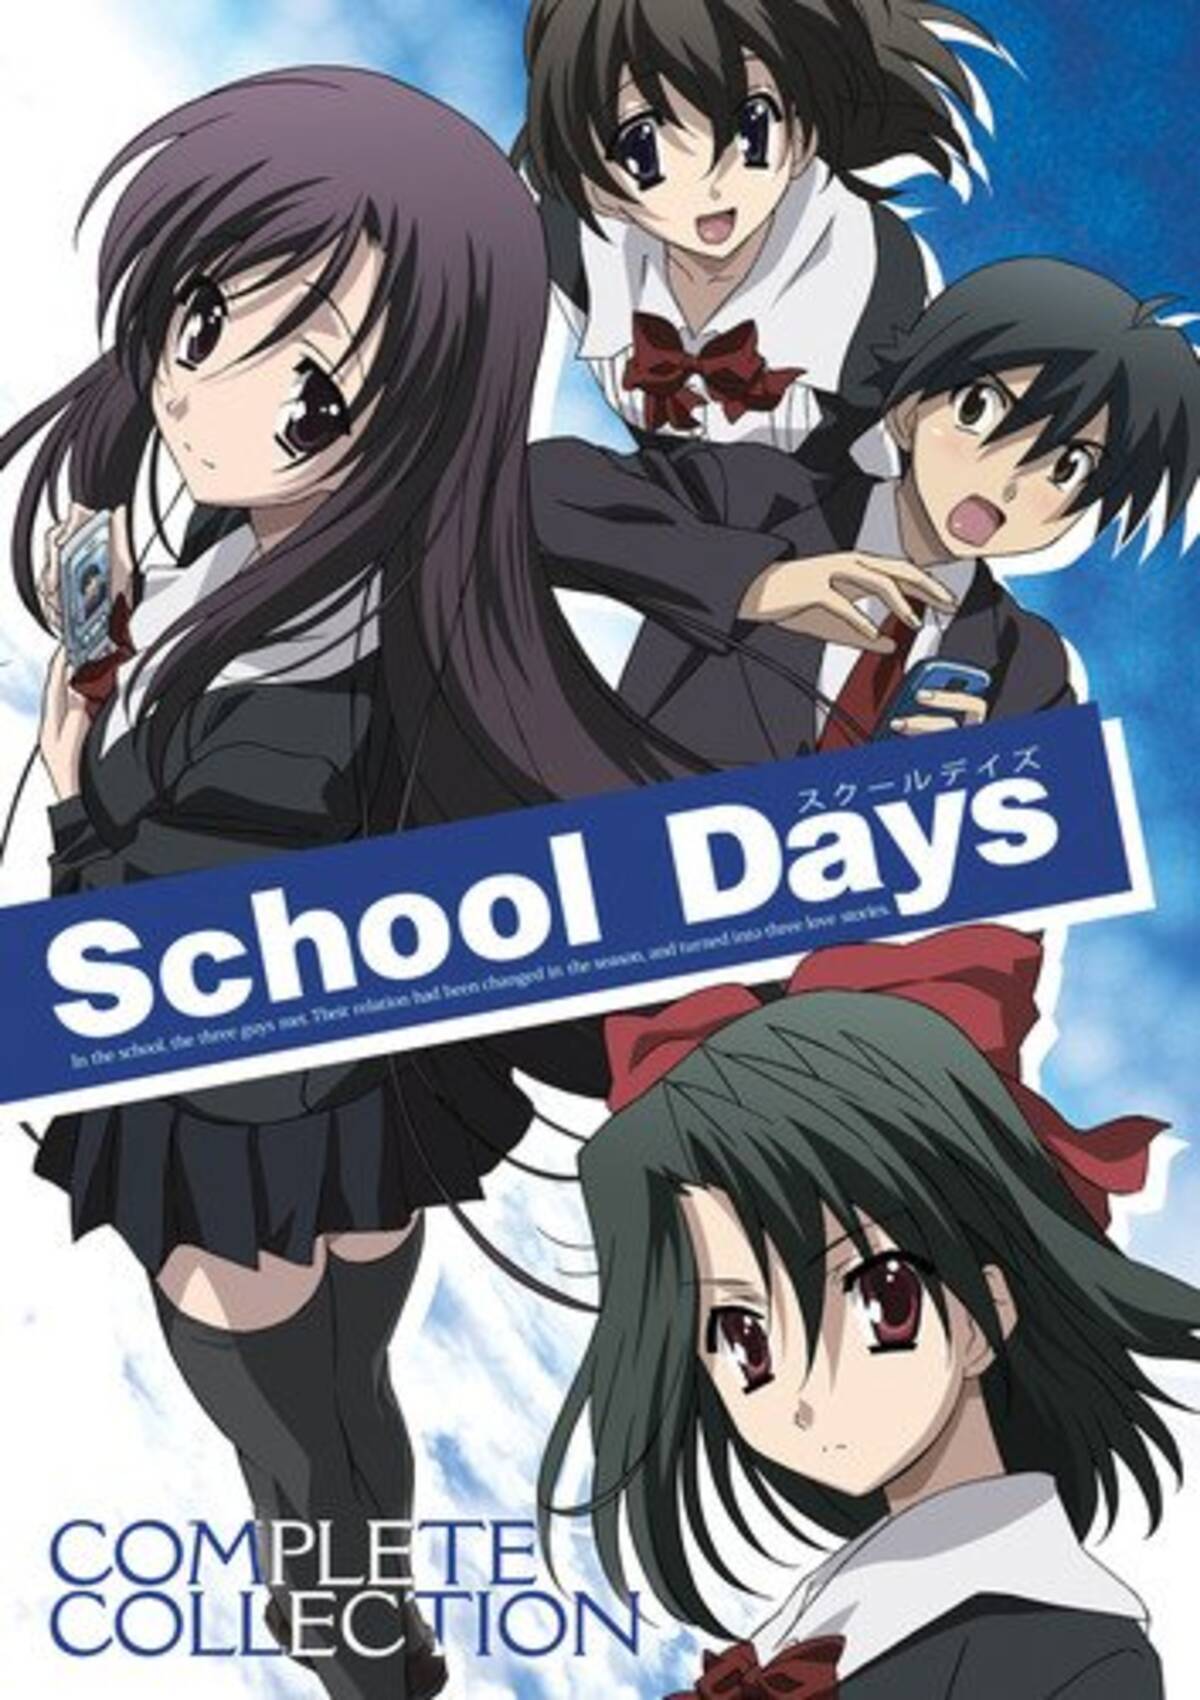 不朽の迷作を紹介 最終回が放送休止となる 騒ぎとなった極悪非道なラブコメディーアニメ School Days 19年4月18日 エキサイトニュース